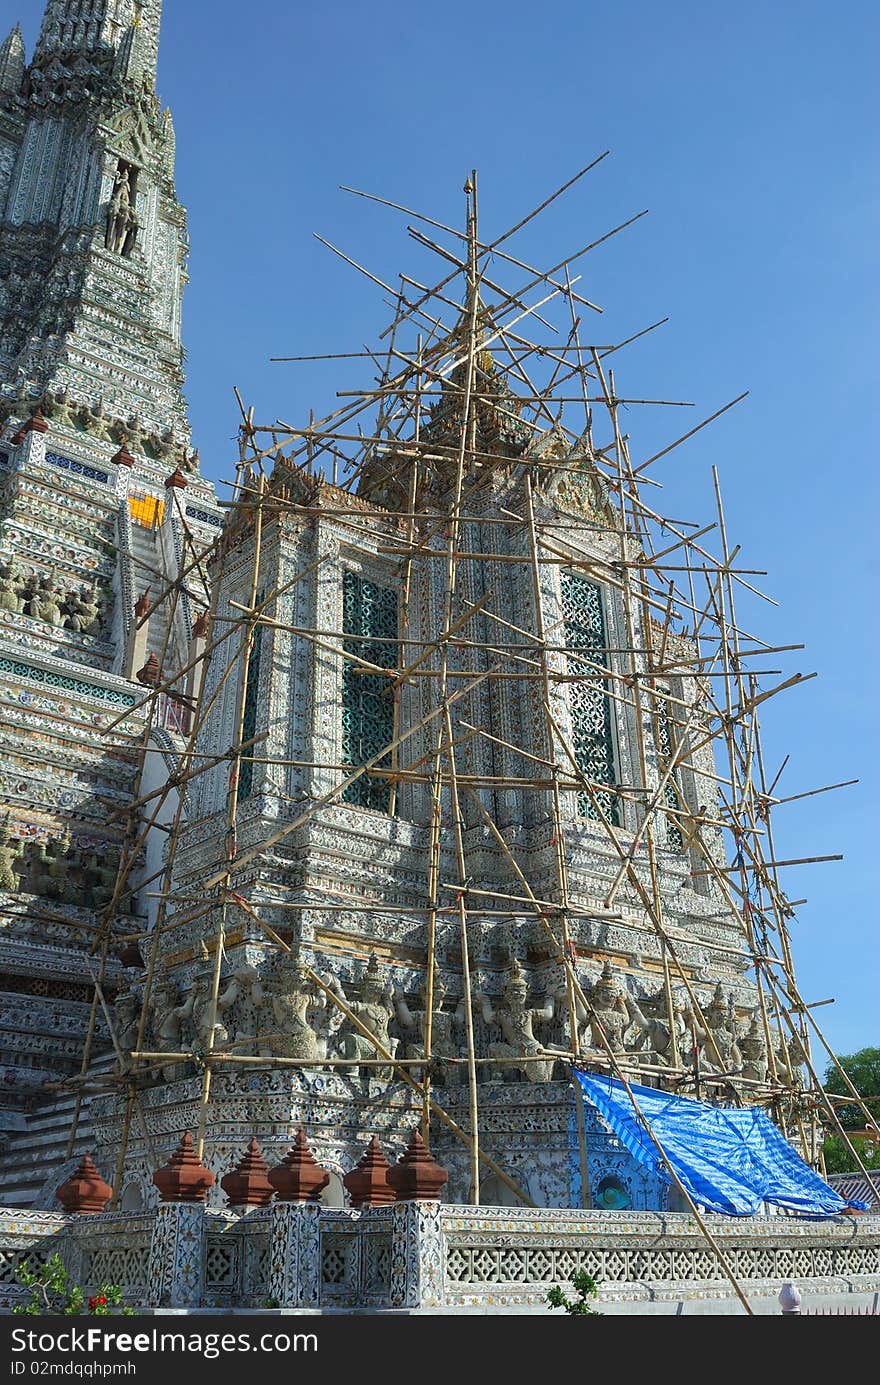 Pagoda at Wat Arun Temple Bangkok
Pagoda